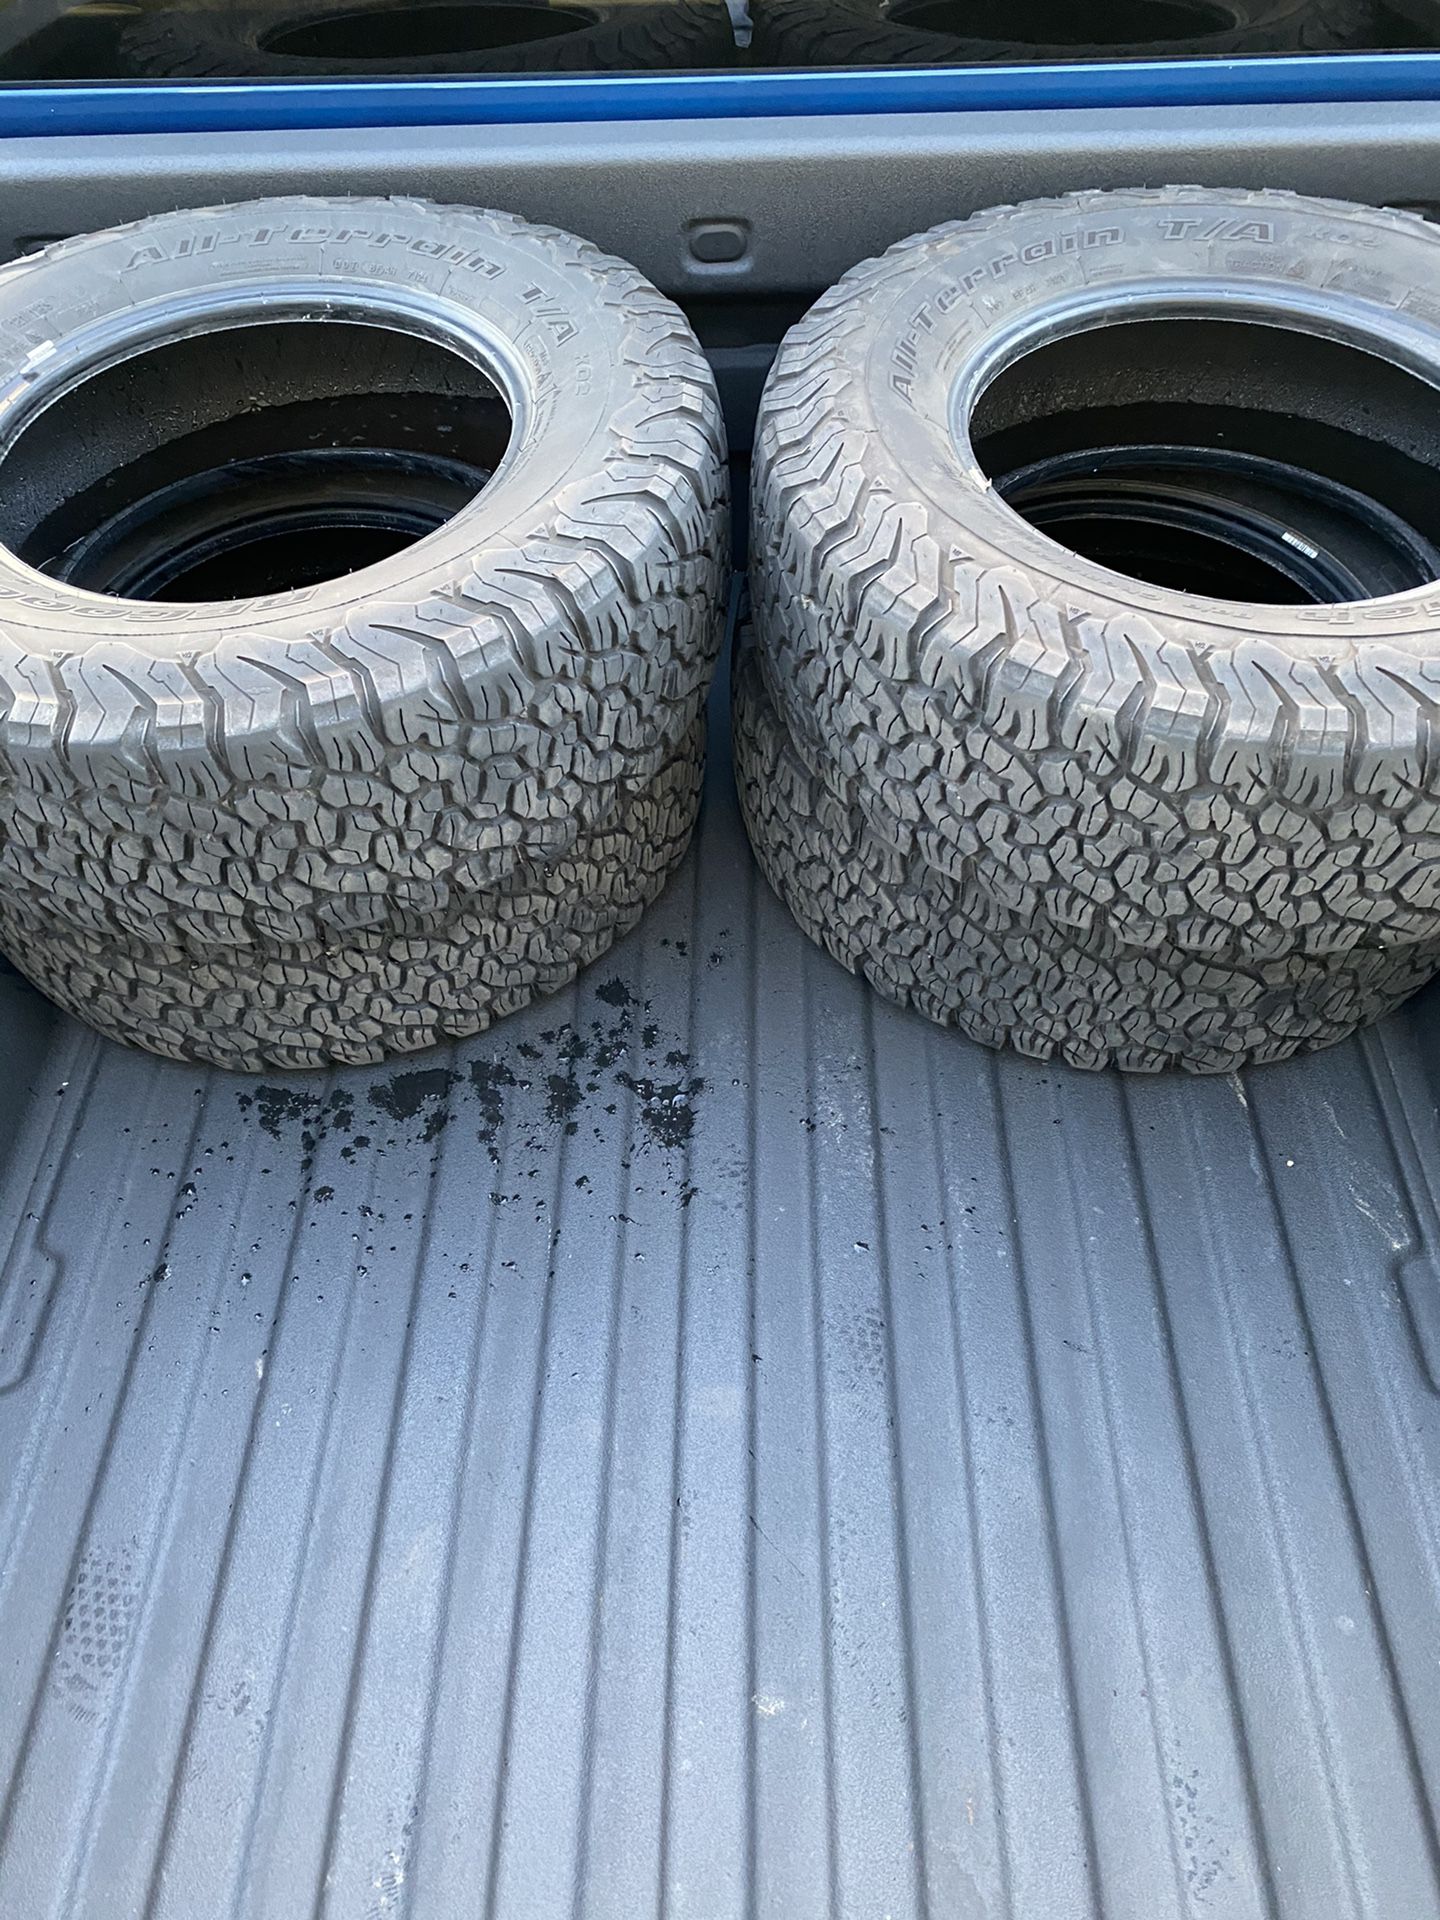 BFG KO2 265/70R17 tires